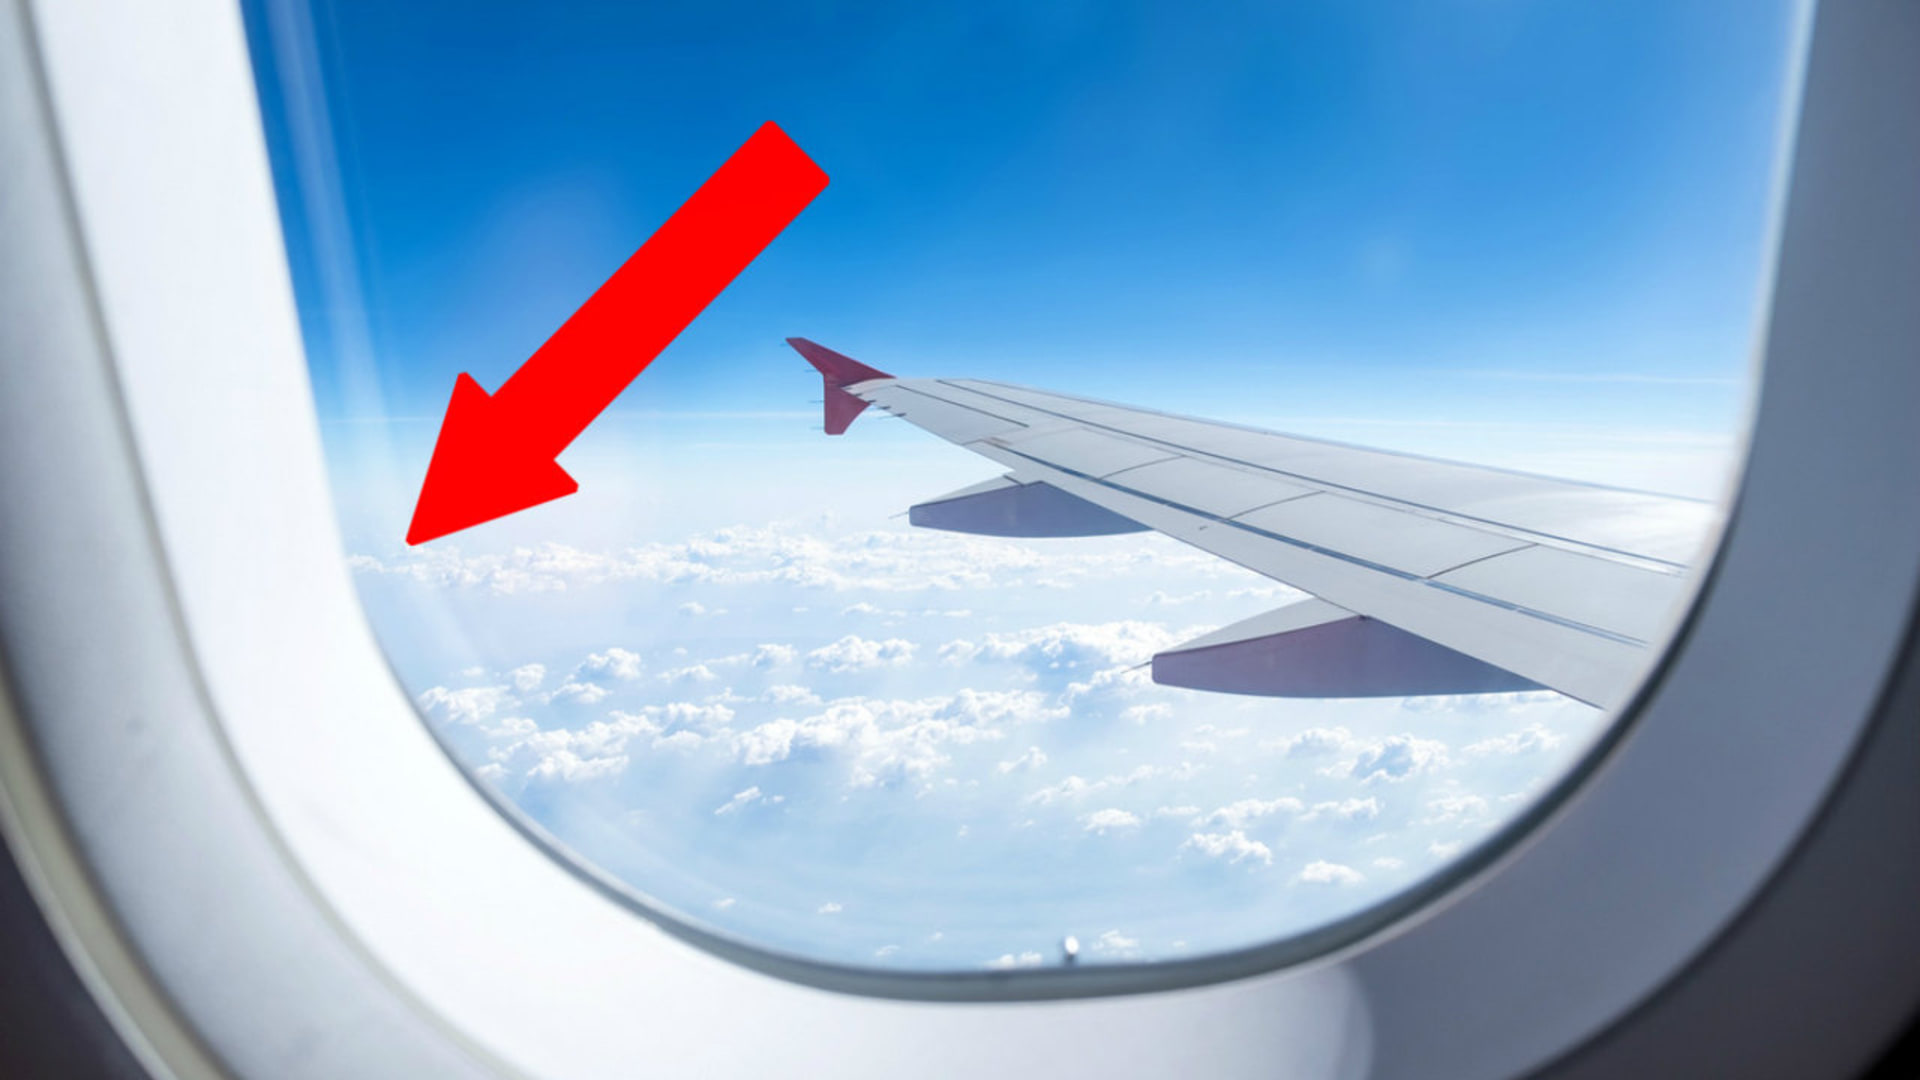 Co vyděsilo pasažéry letadla?